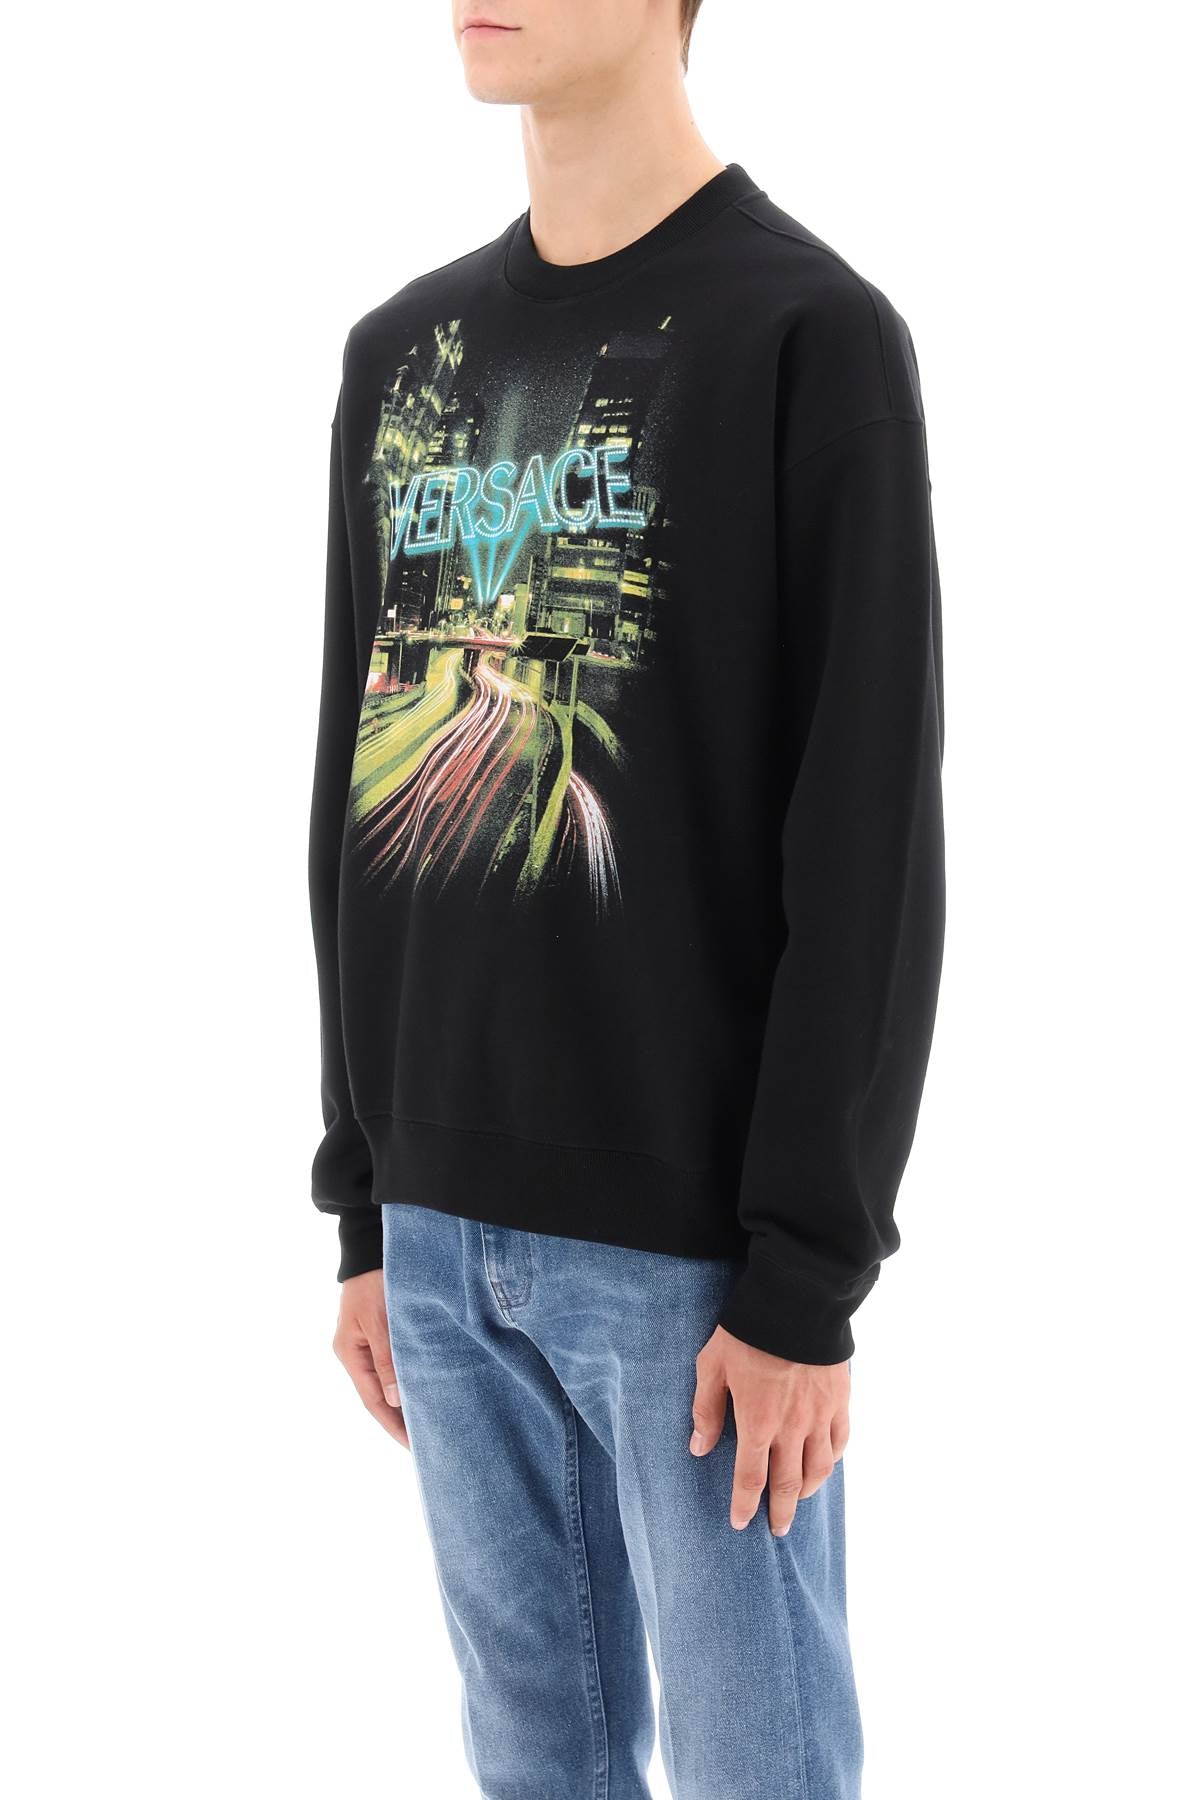 Versace Versace crew-neck sweatshirt with city lights print